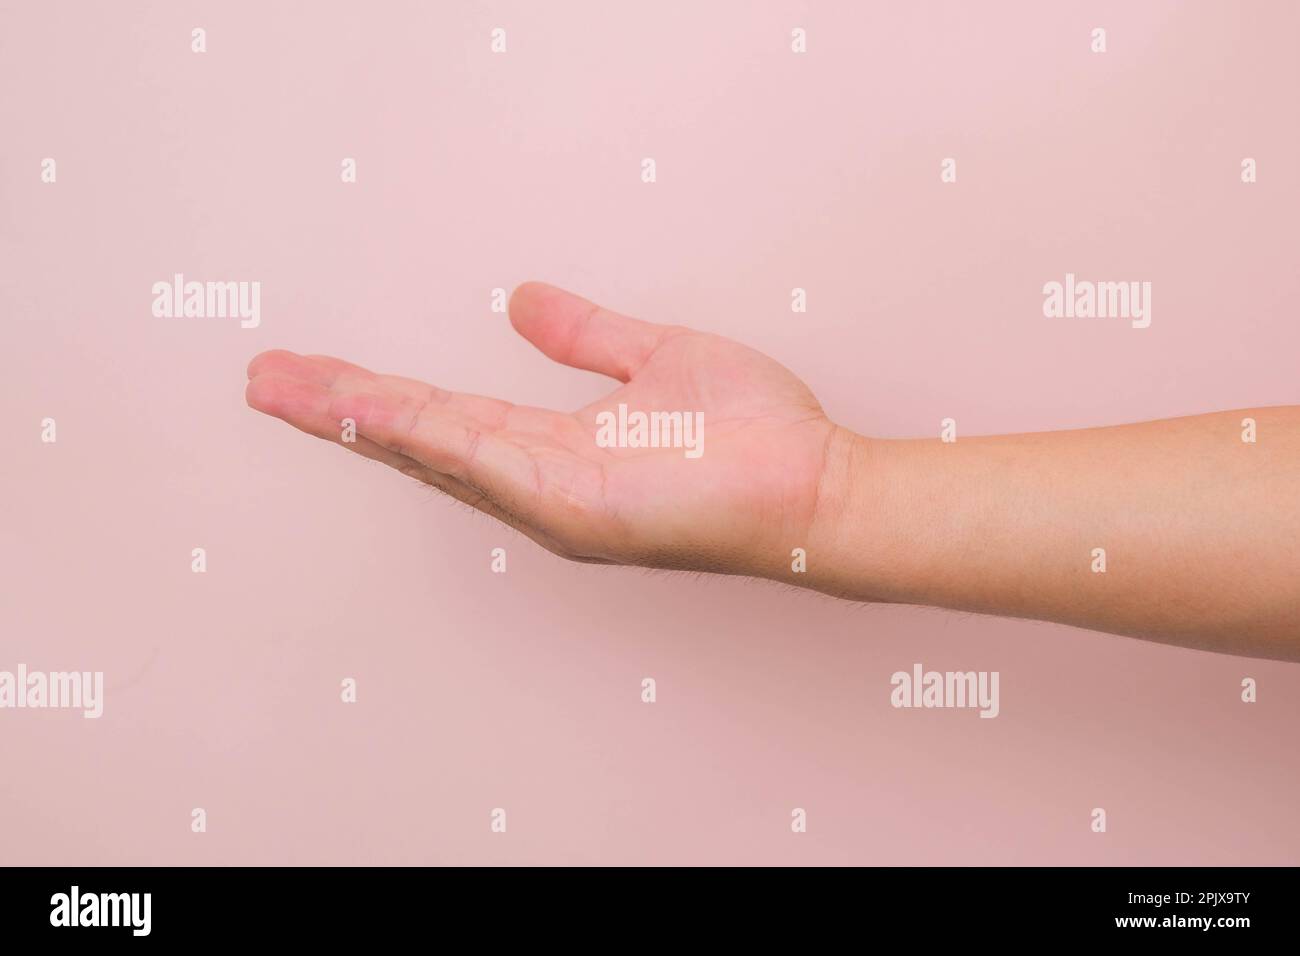 Nahaufnahme männliche Hand, die bereit ist, zu helfen oder zu empfangen, isoliert auf pinkfarbenem Hintergrund. Helfende Hand zur Rettung ausgestreckt. Stockfoto